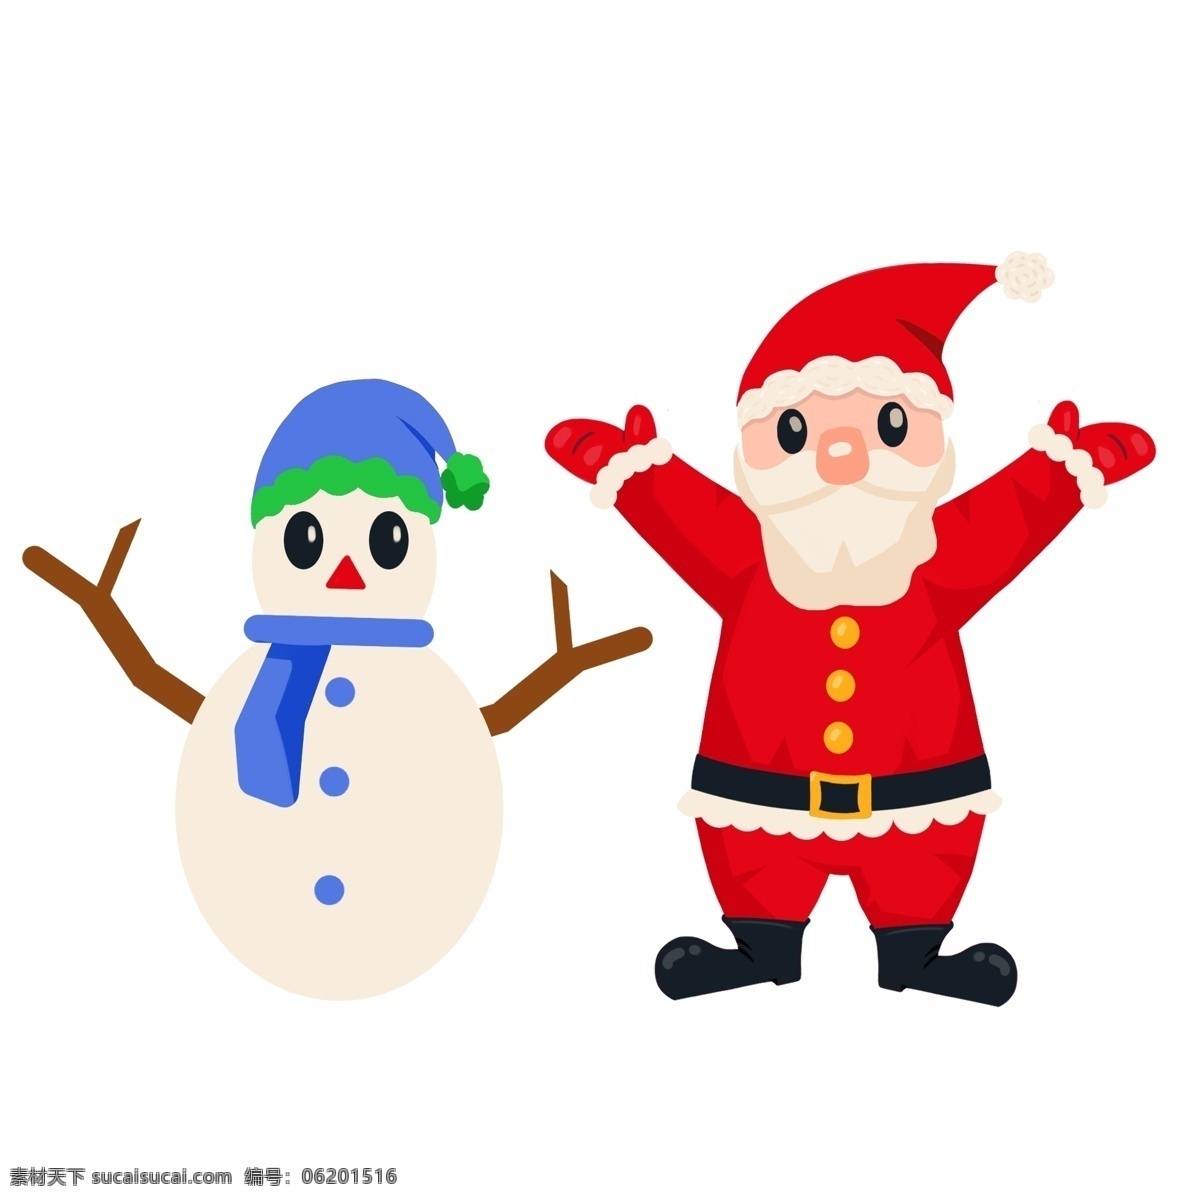 卡通 圣诞老人 可爱 手绘 礼物 礼物盒 圣诞节 送礼 糖果拐杖 圣诞礼物 白胡子老爷爷 大胡子 惊喜 雪人